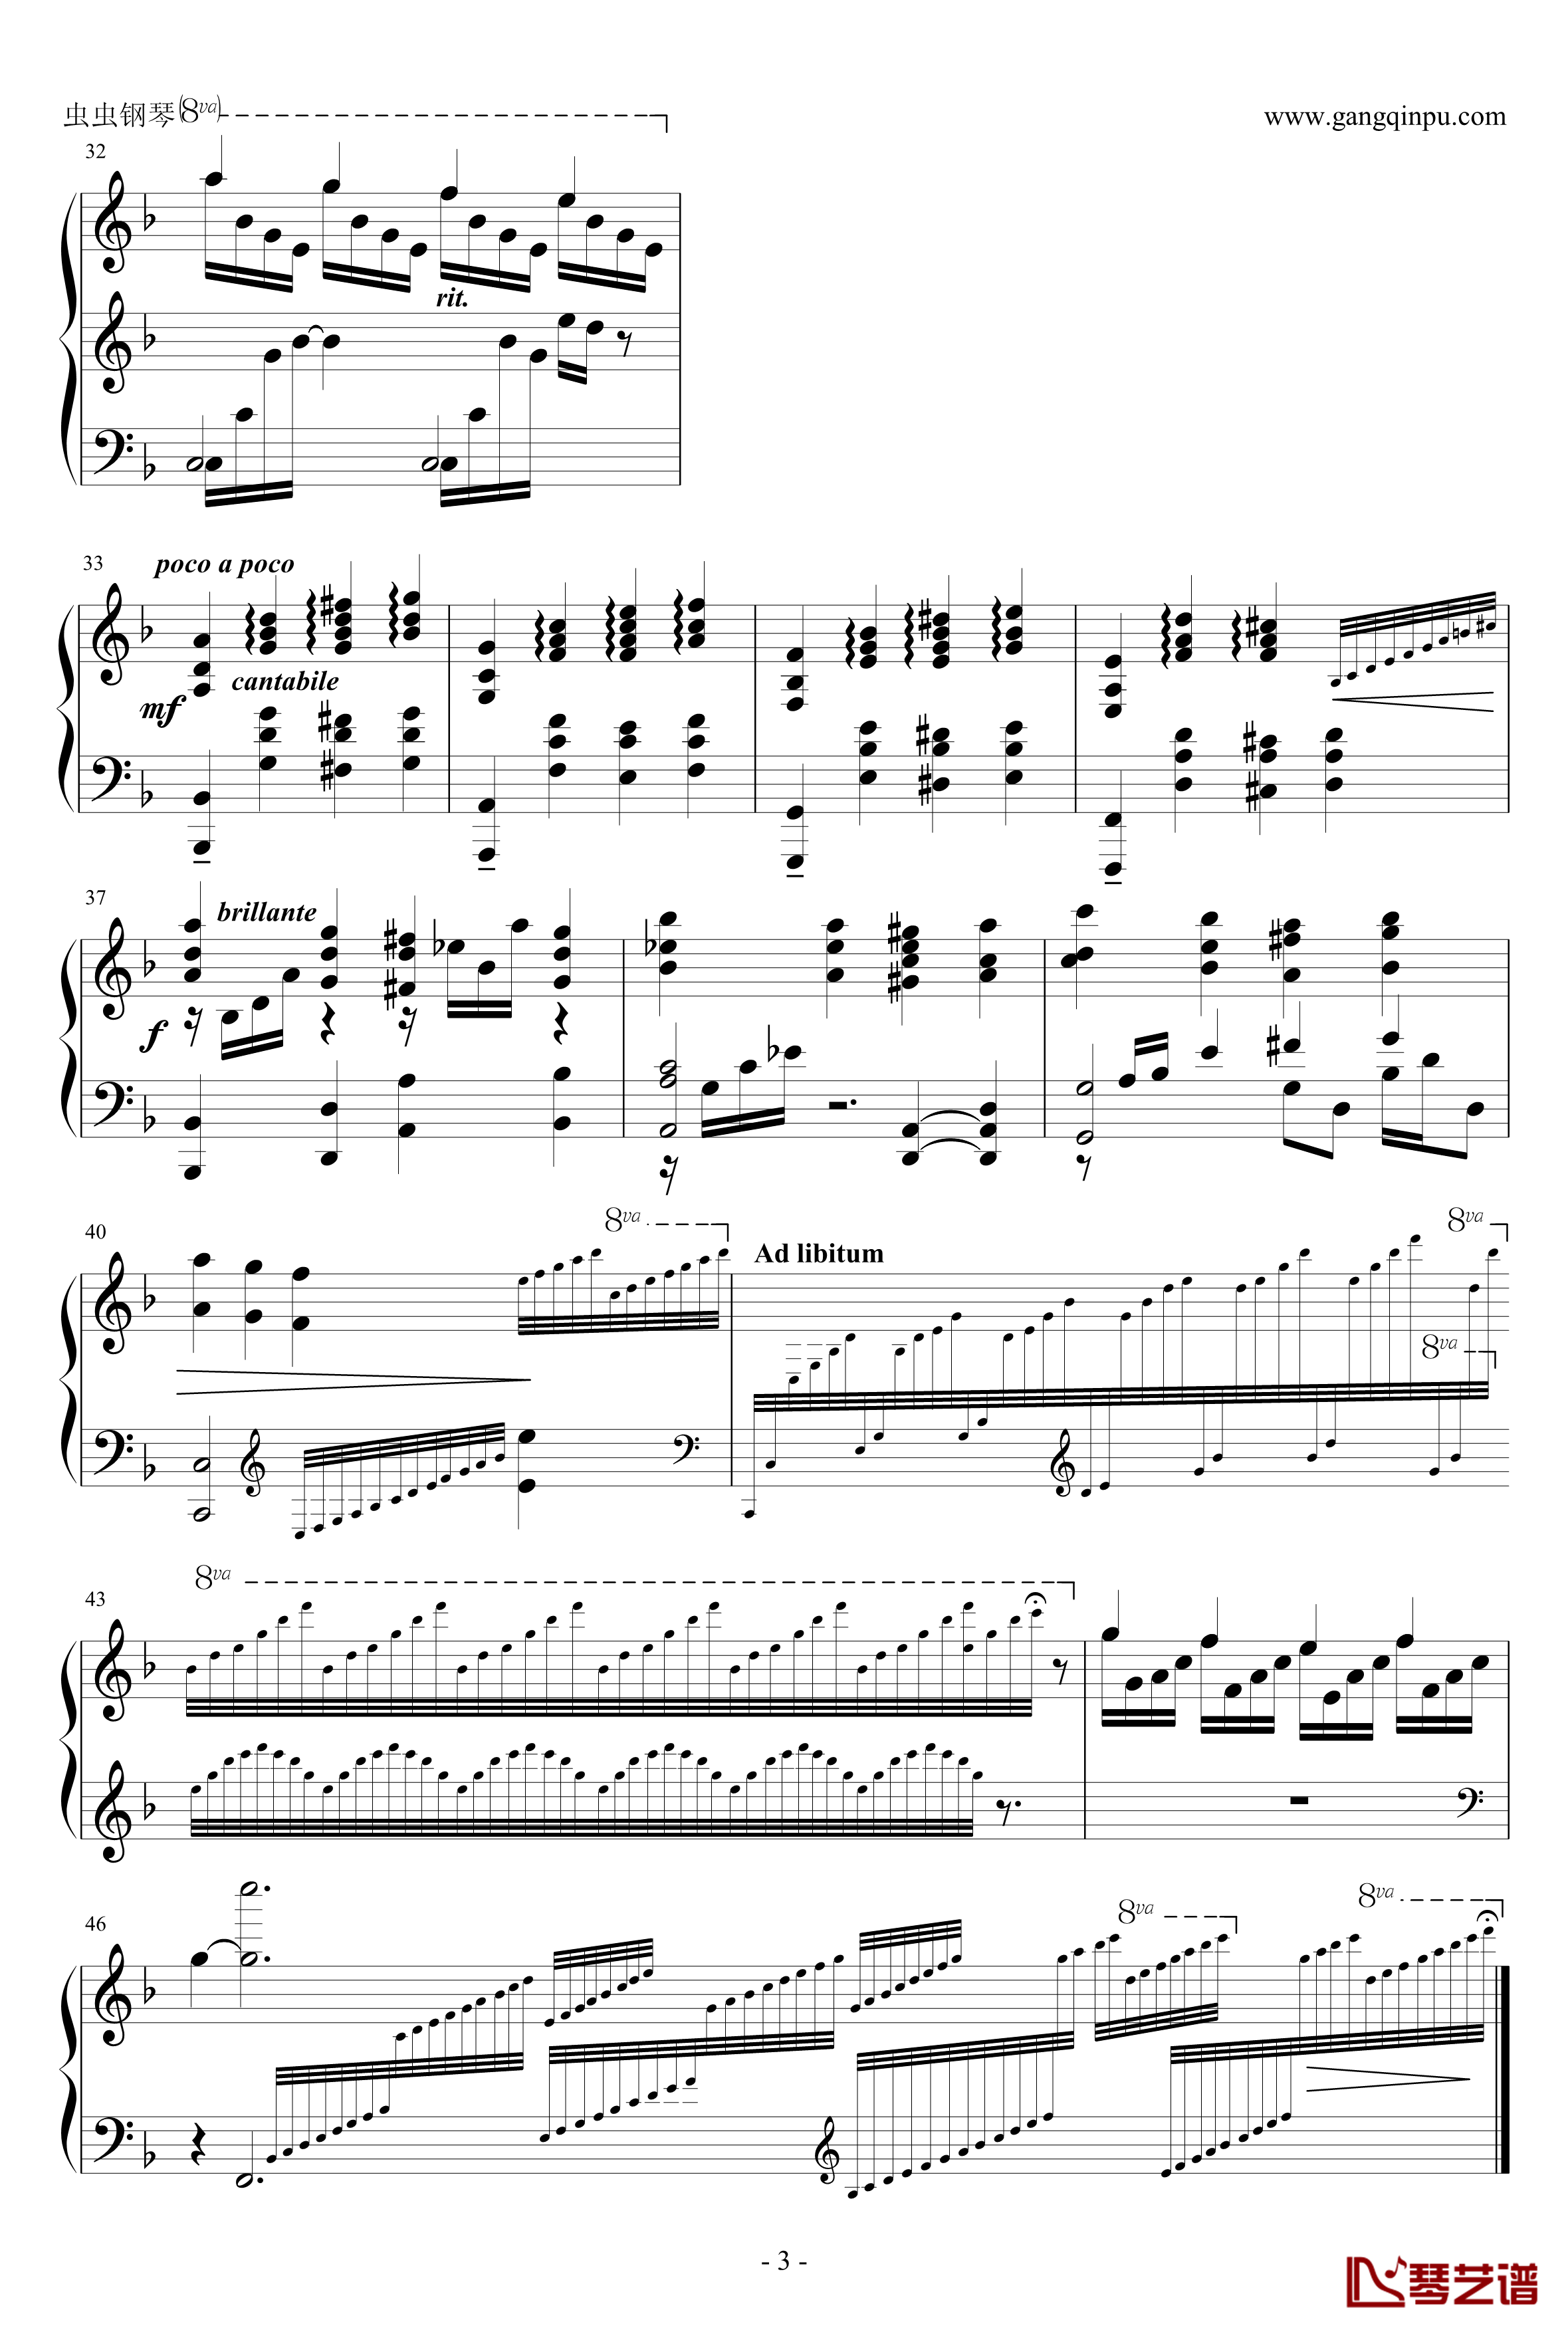 塞尔达传说大精灵之泉主题曲钢琴谱-钢琴版-塞尔达3